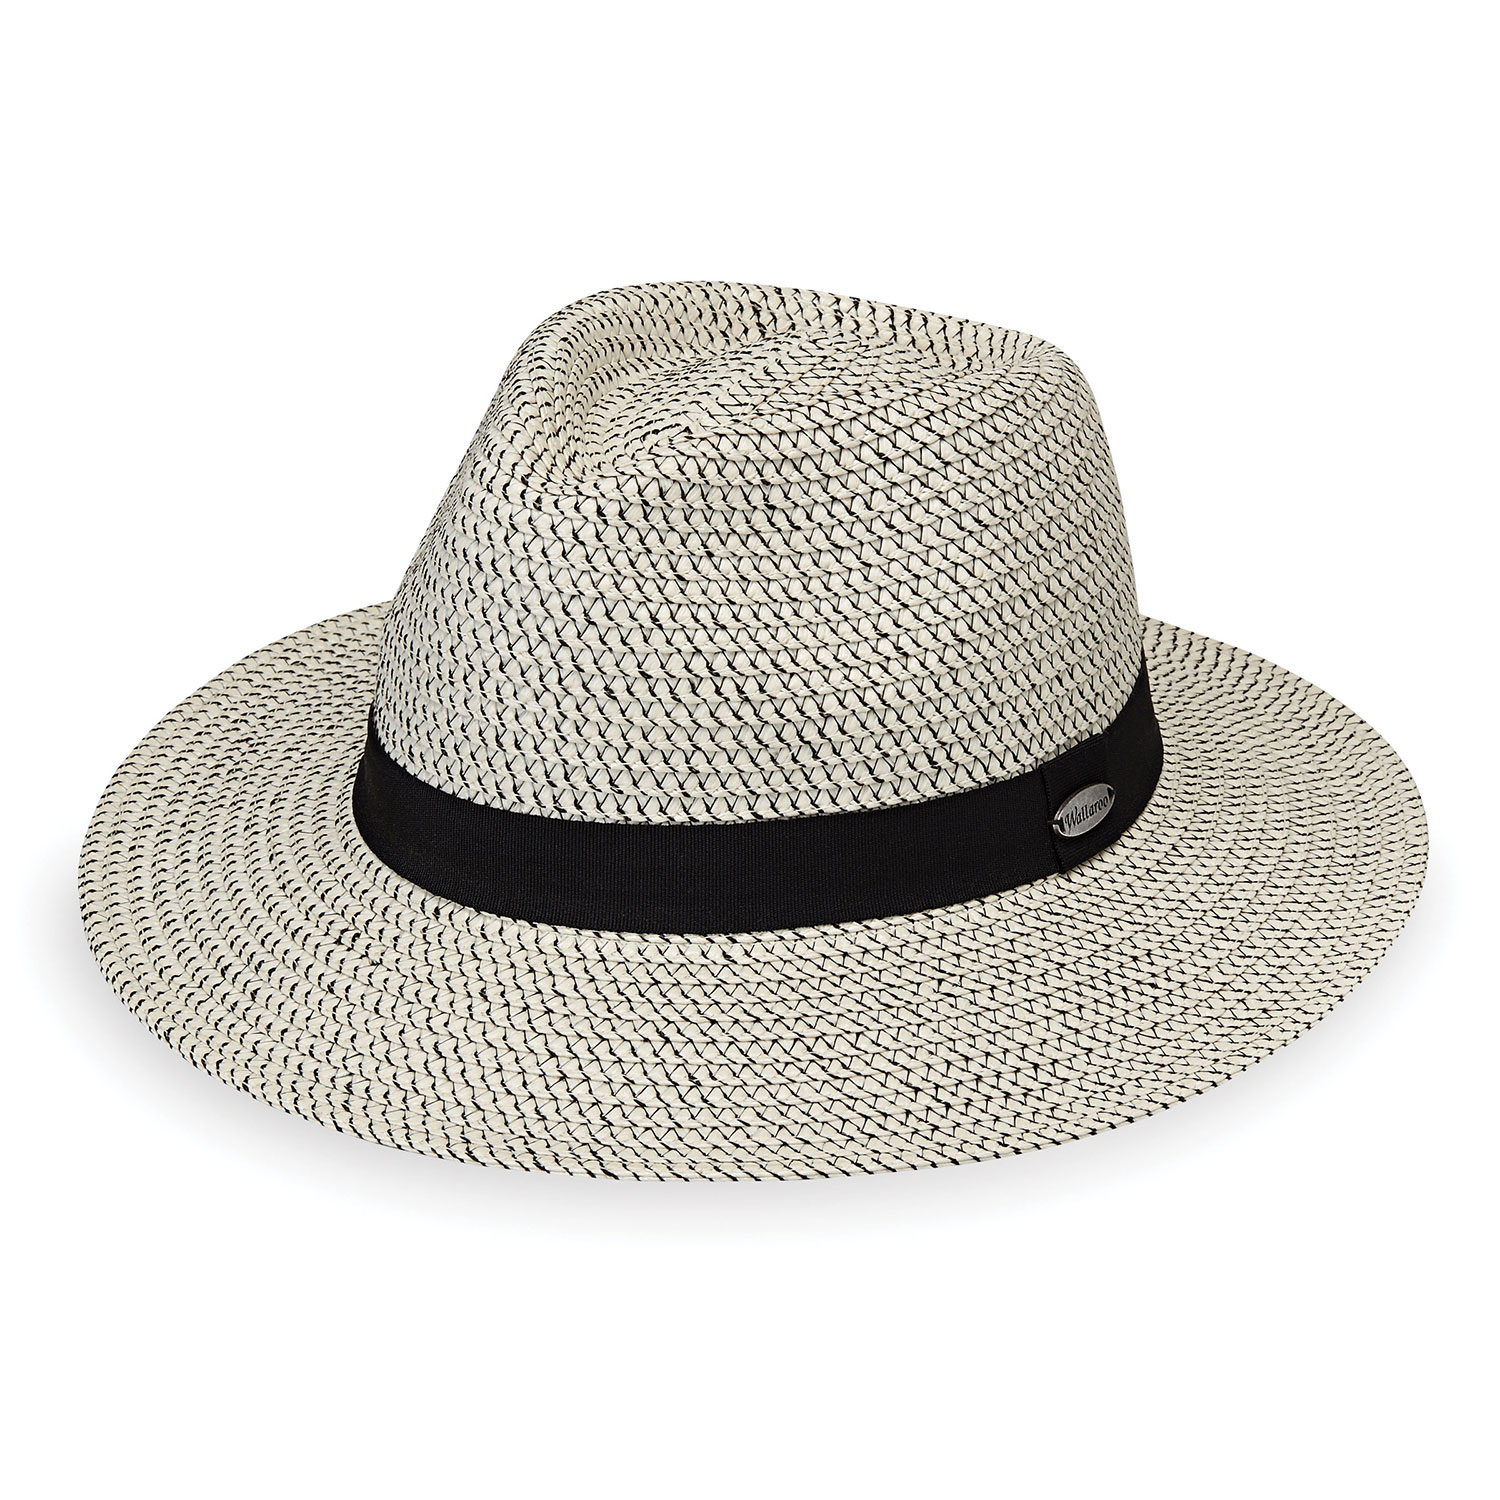  ZFLL Sombrero de sol, nuevo verano sol sombreros